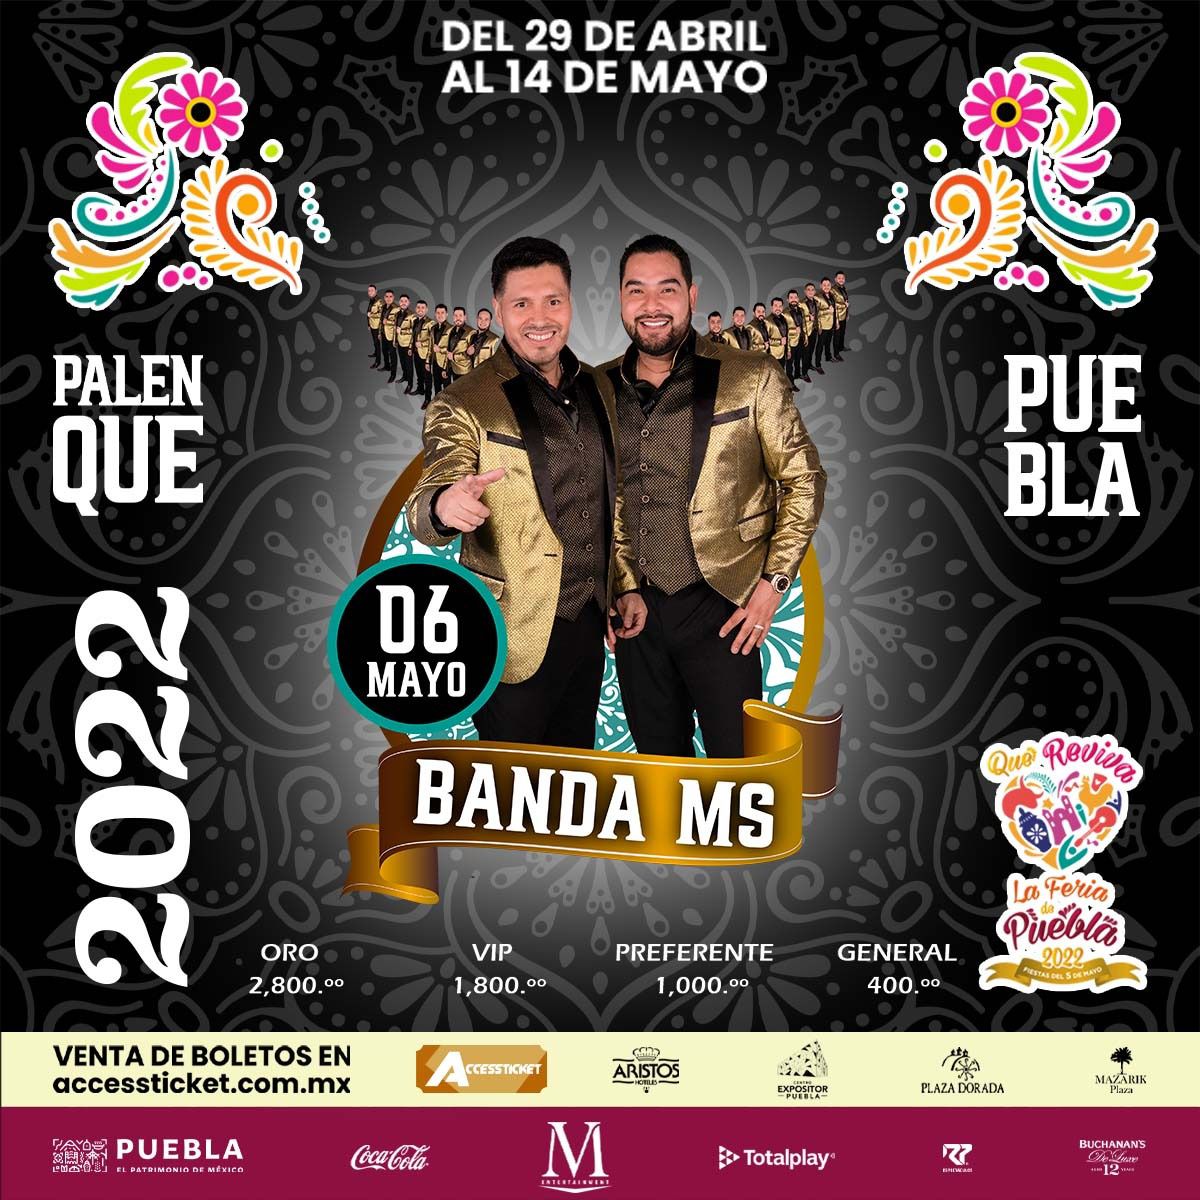 Banda MS, Palenque de Puebla, viernes, 06 de mayo de 2022. Precios y zonas